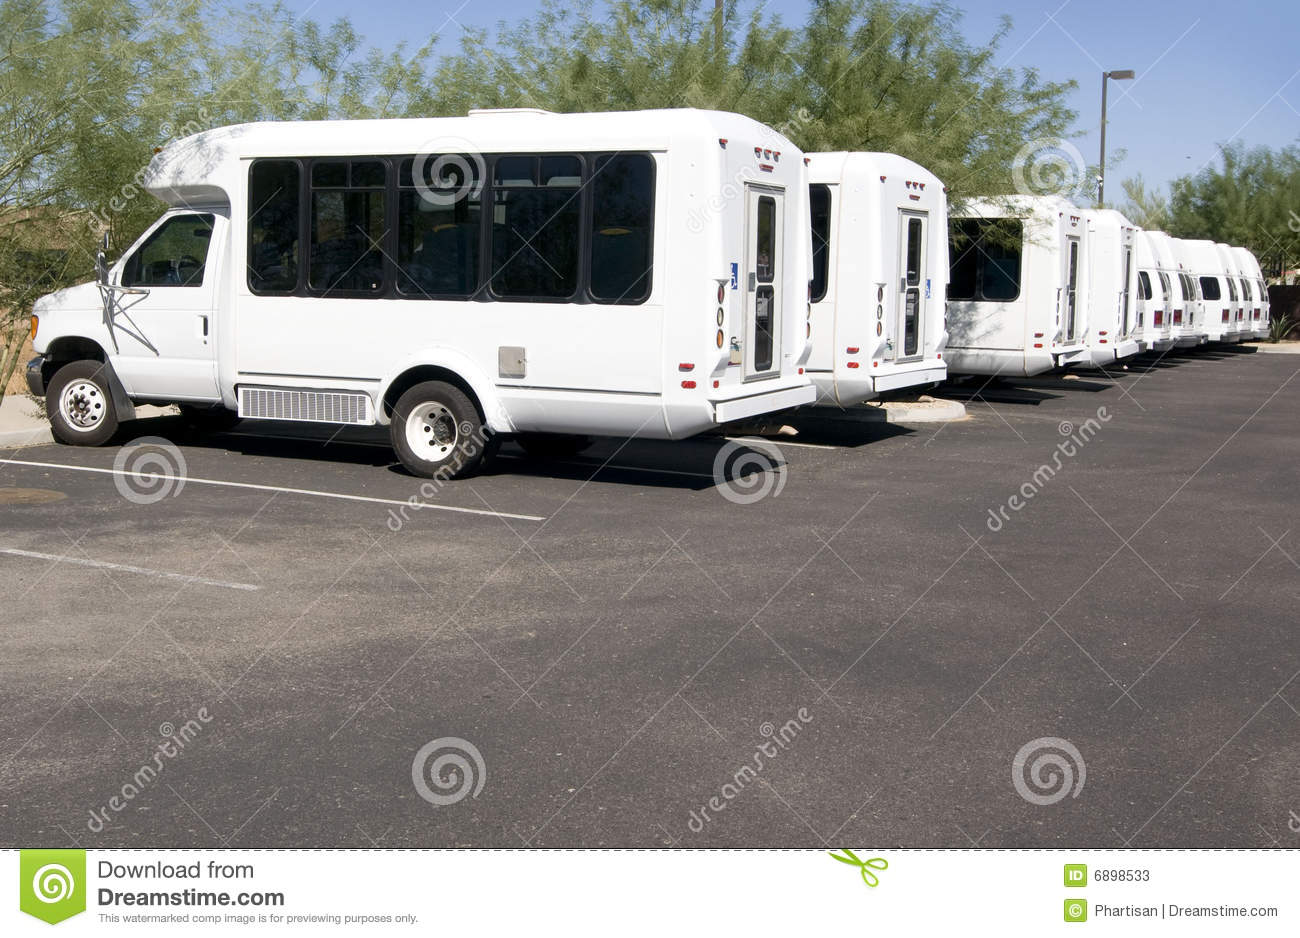 Disabled Mini Van Bus Transportation Stock Photos   Image  6898533